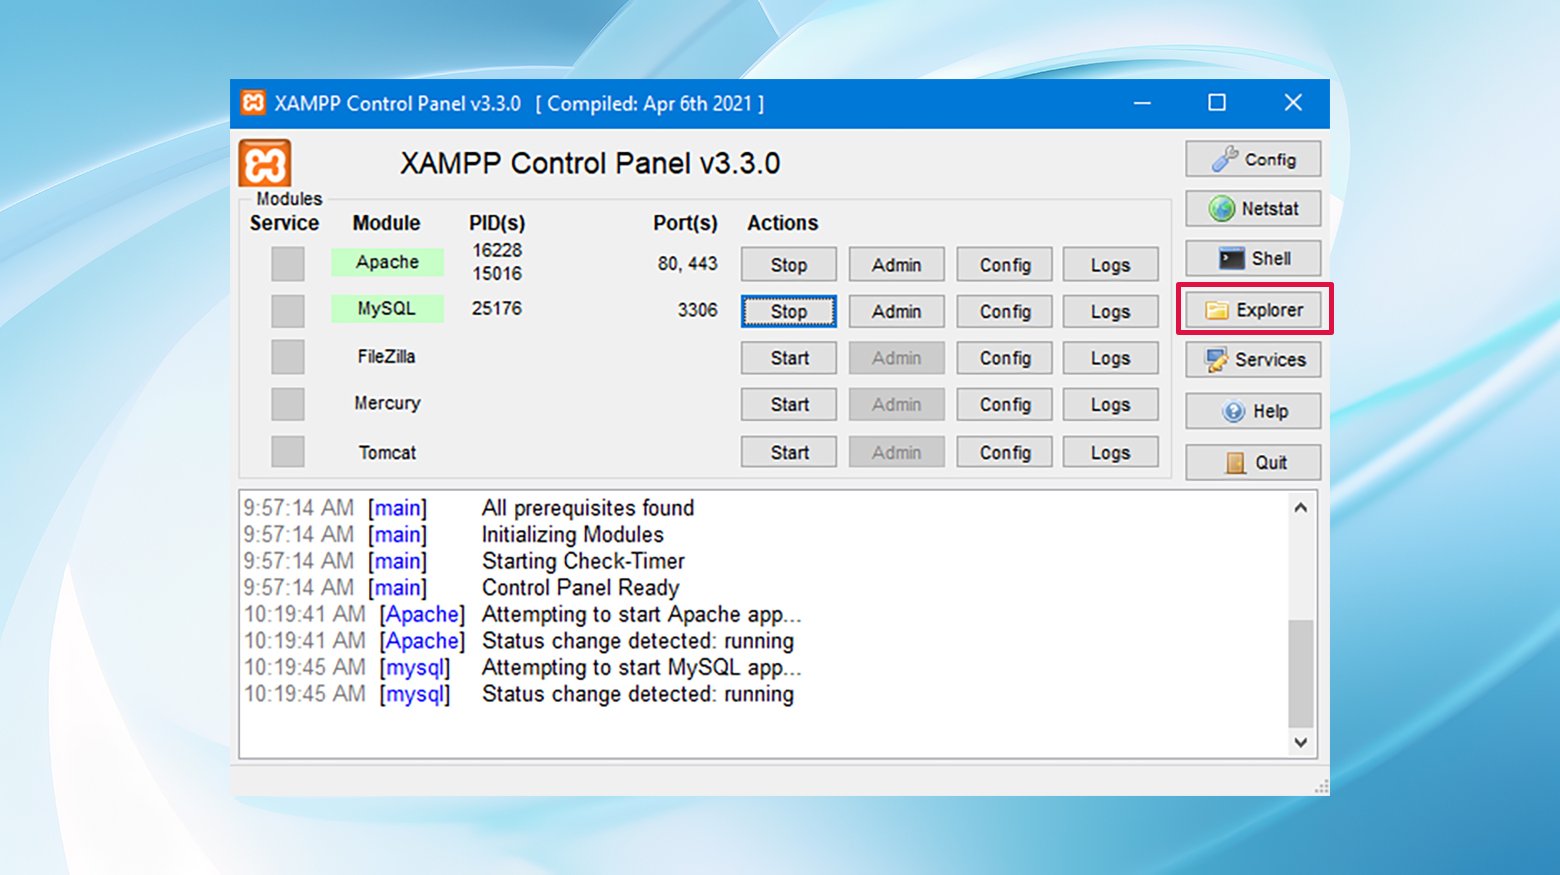 Accéder aux fichiers XAMPP à partir du bouton explorateur du panneau de configuration est la première étape pour dépanner les erreurs localhost/index.php.